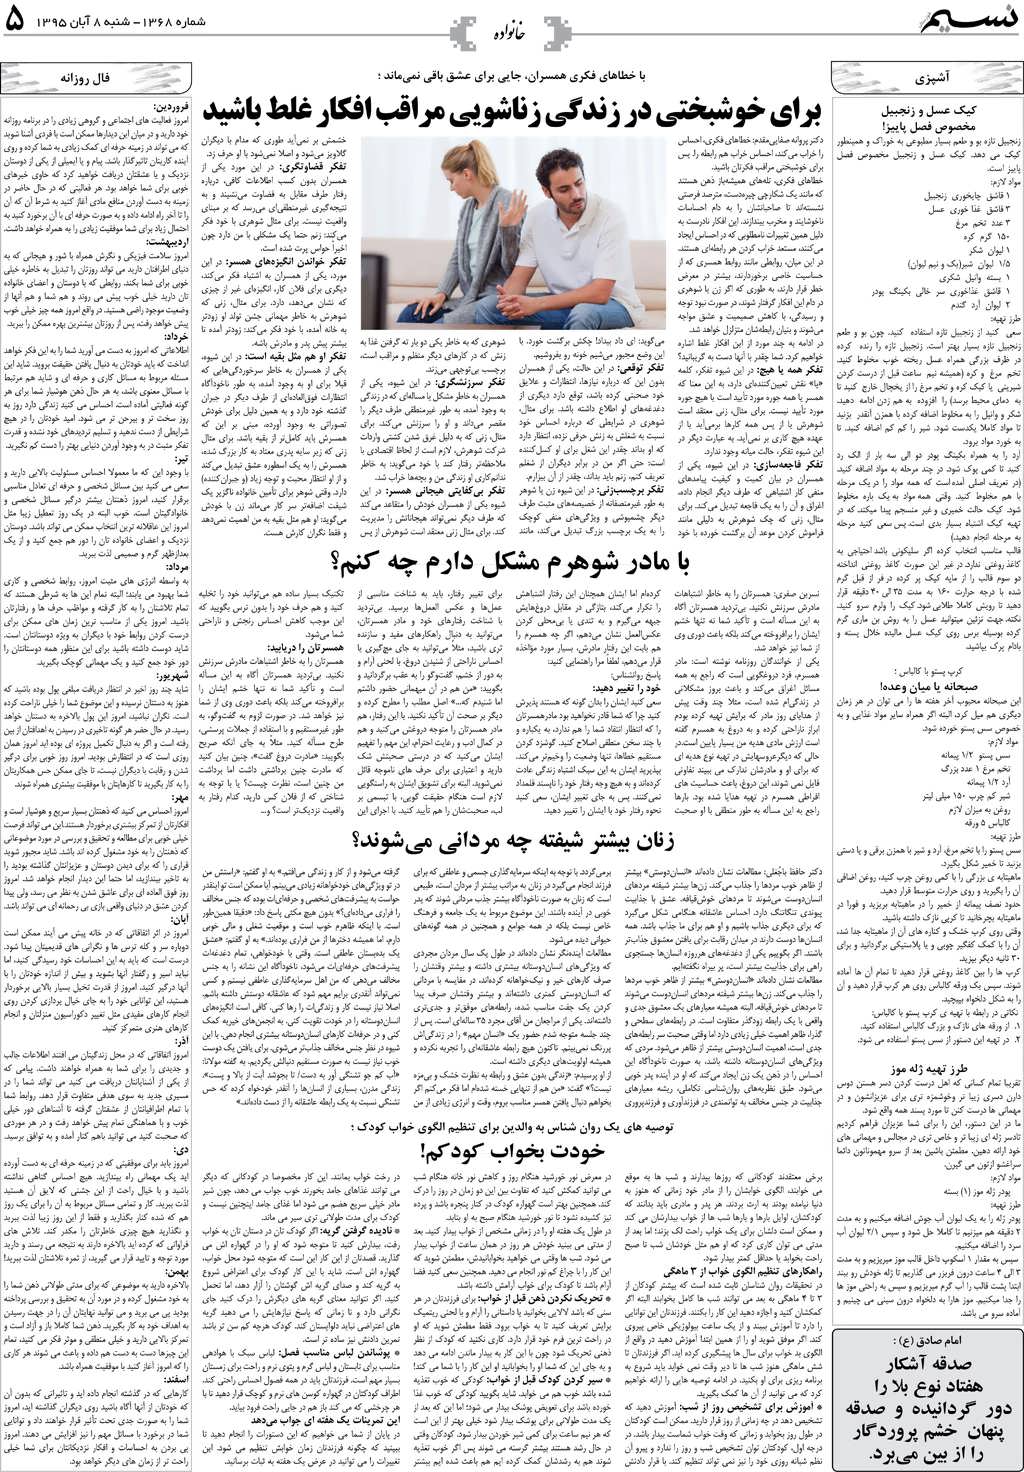 صفحه خانواده روزنامه نسیم شماره 1368